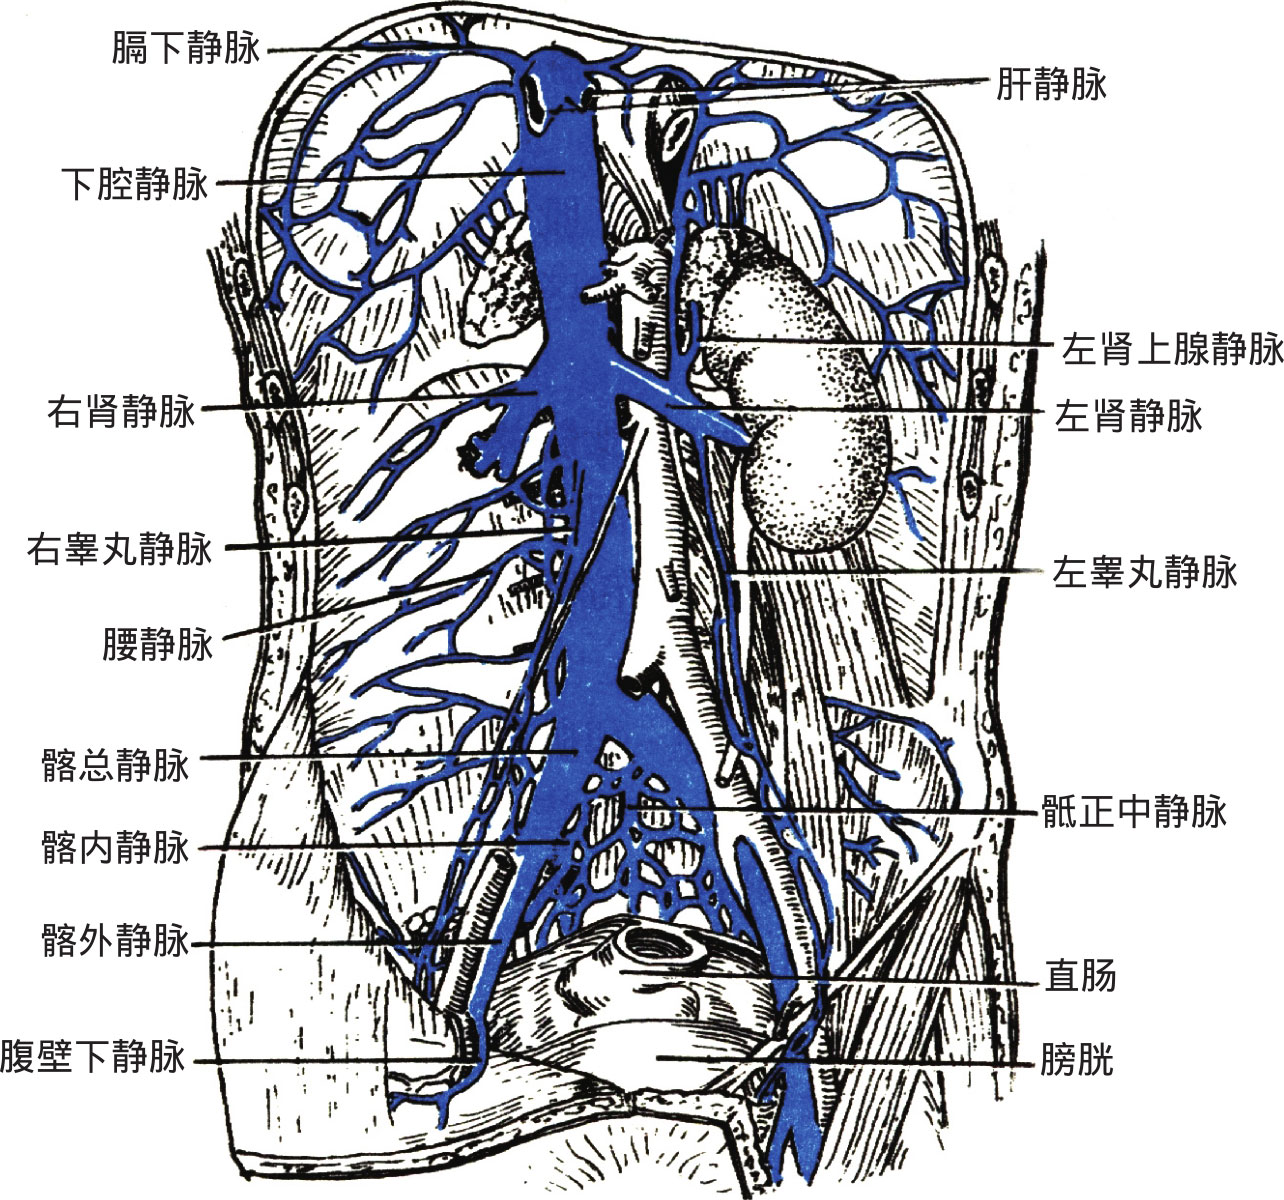 (2)下腔静脉系:下腔静脉系由下腔静脉及其属支(还包括肝门静脉系